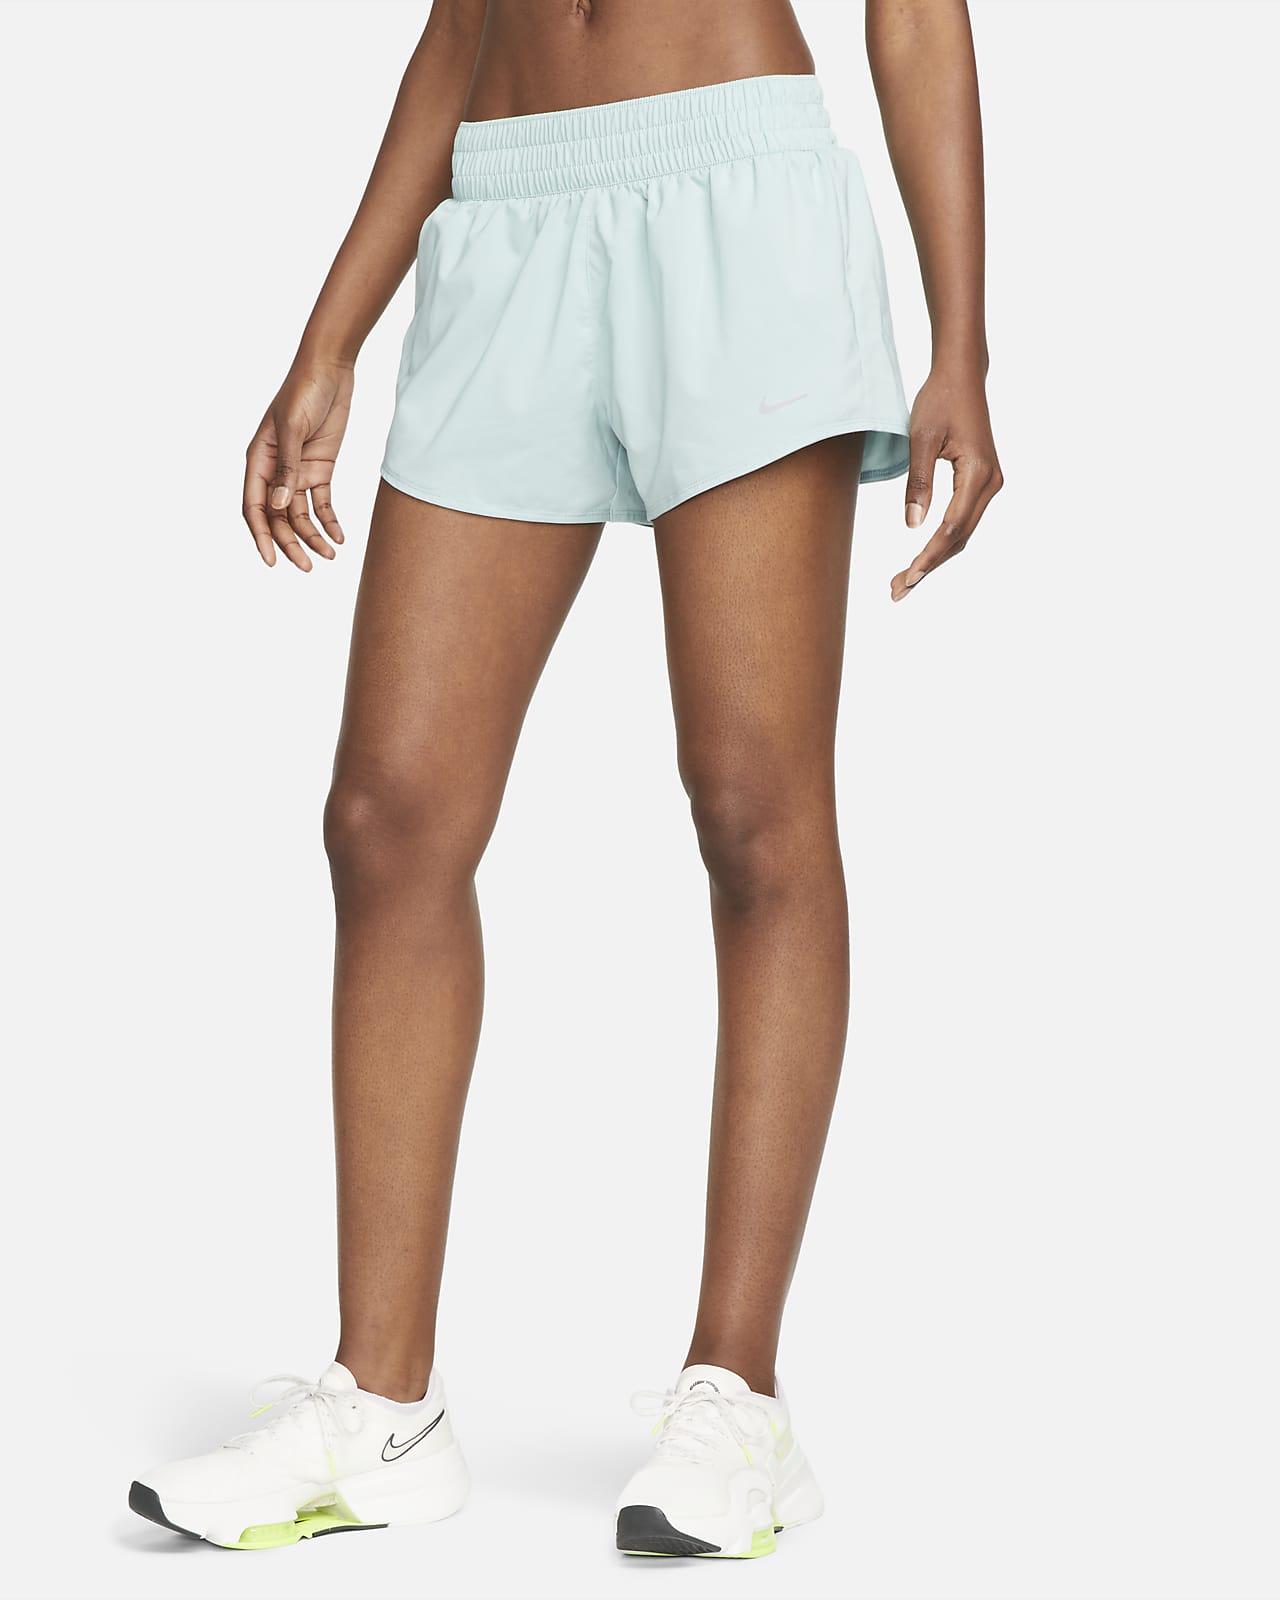 Shorts con forro de ropa interior Dri-FIT de tiro medio de 8 cm para mujer Nike One